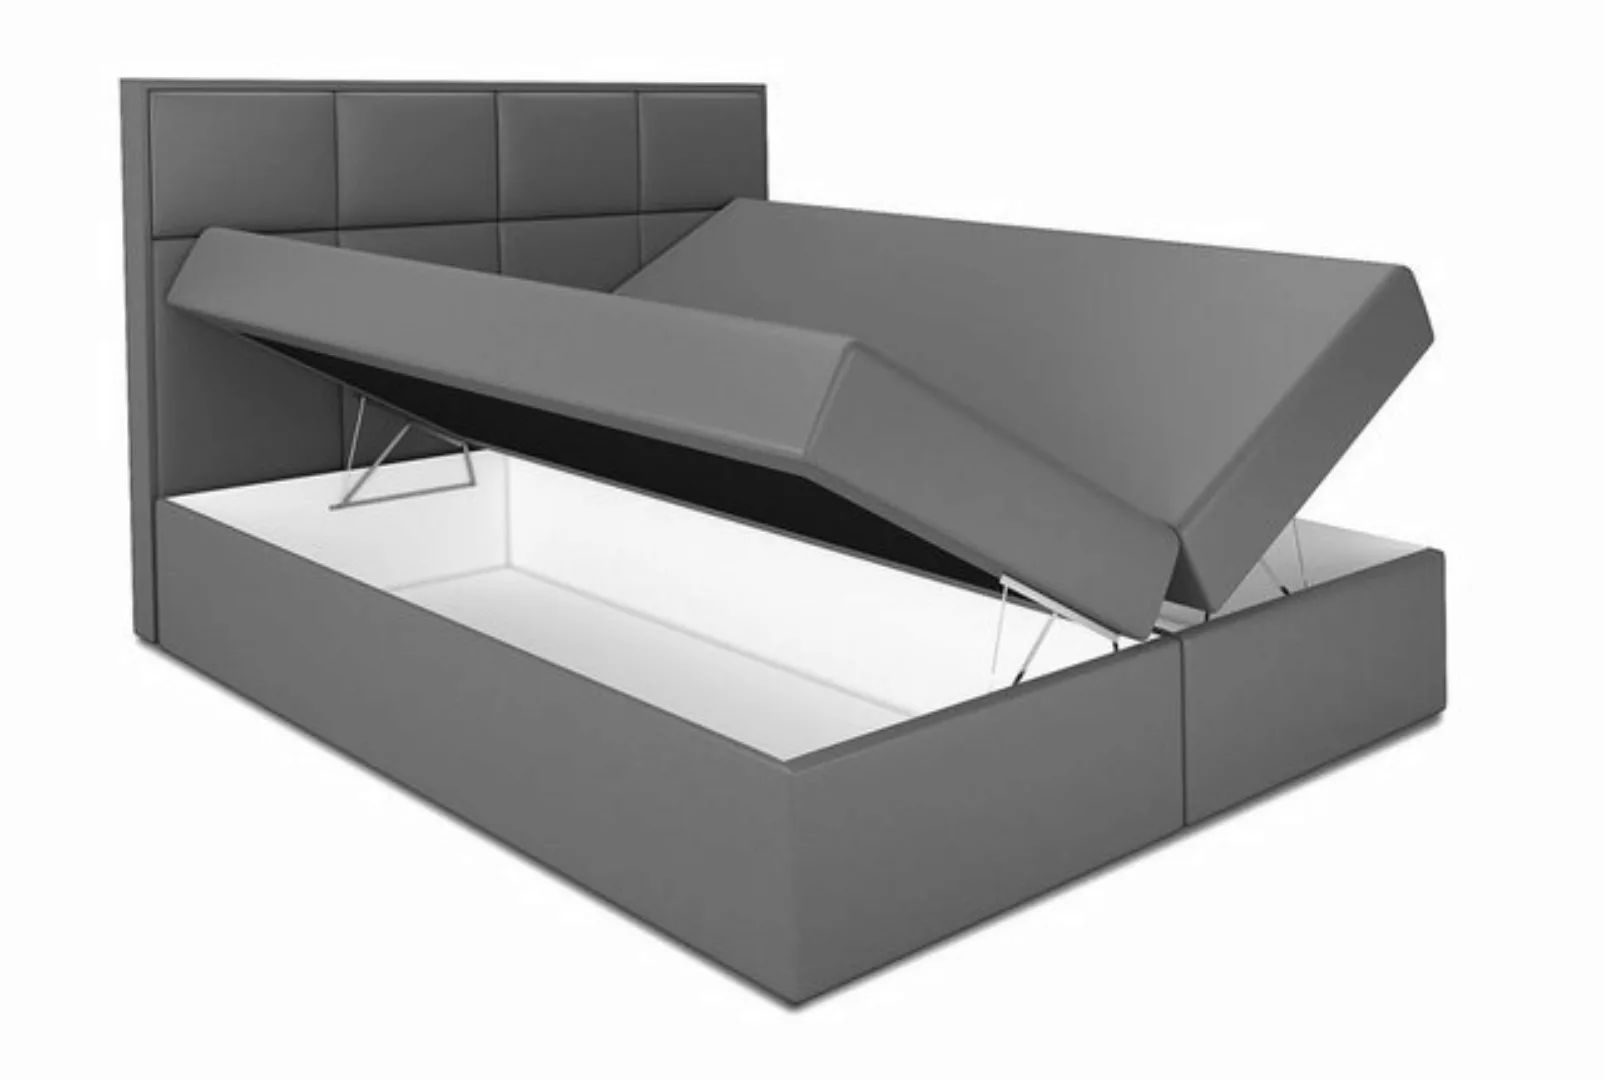 A&J MöbelLand GmbH Boxspringbett DAN mit 2 Bettkästen, Bonell-Matratze und günstig online kaufen